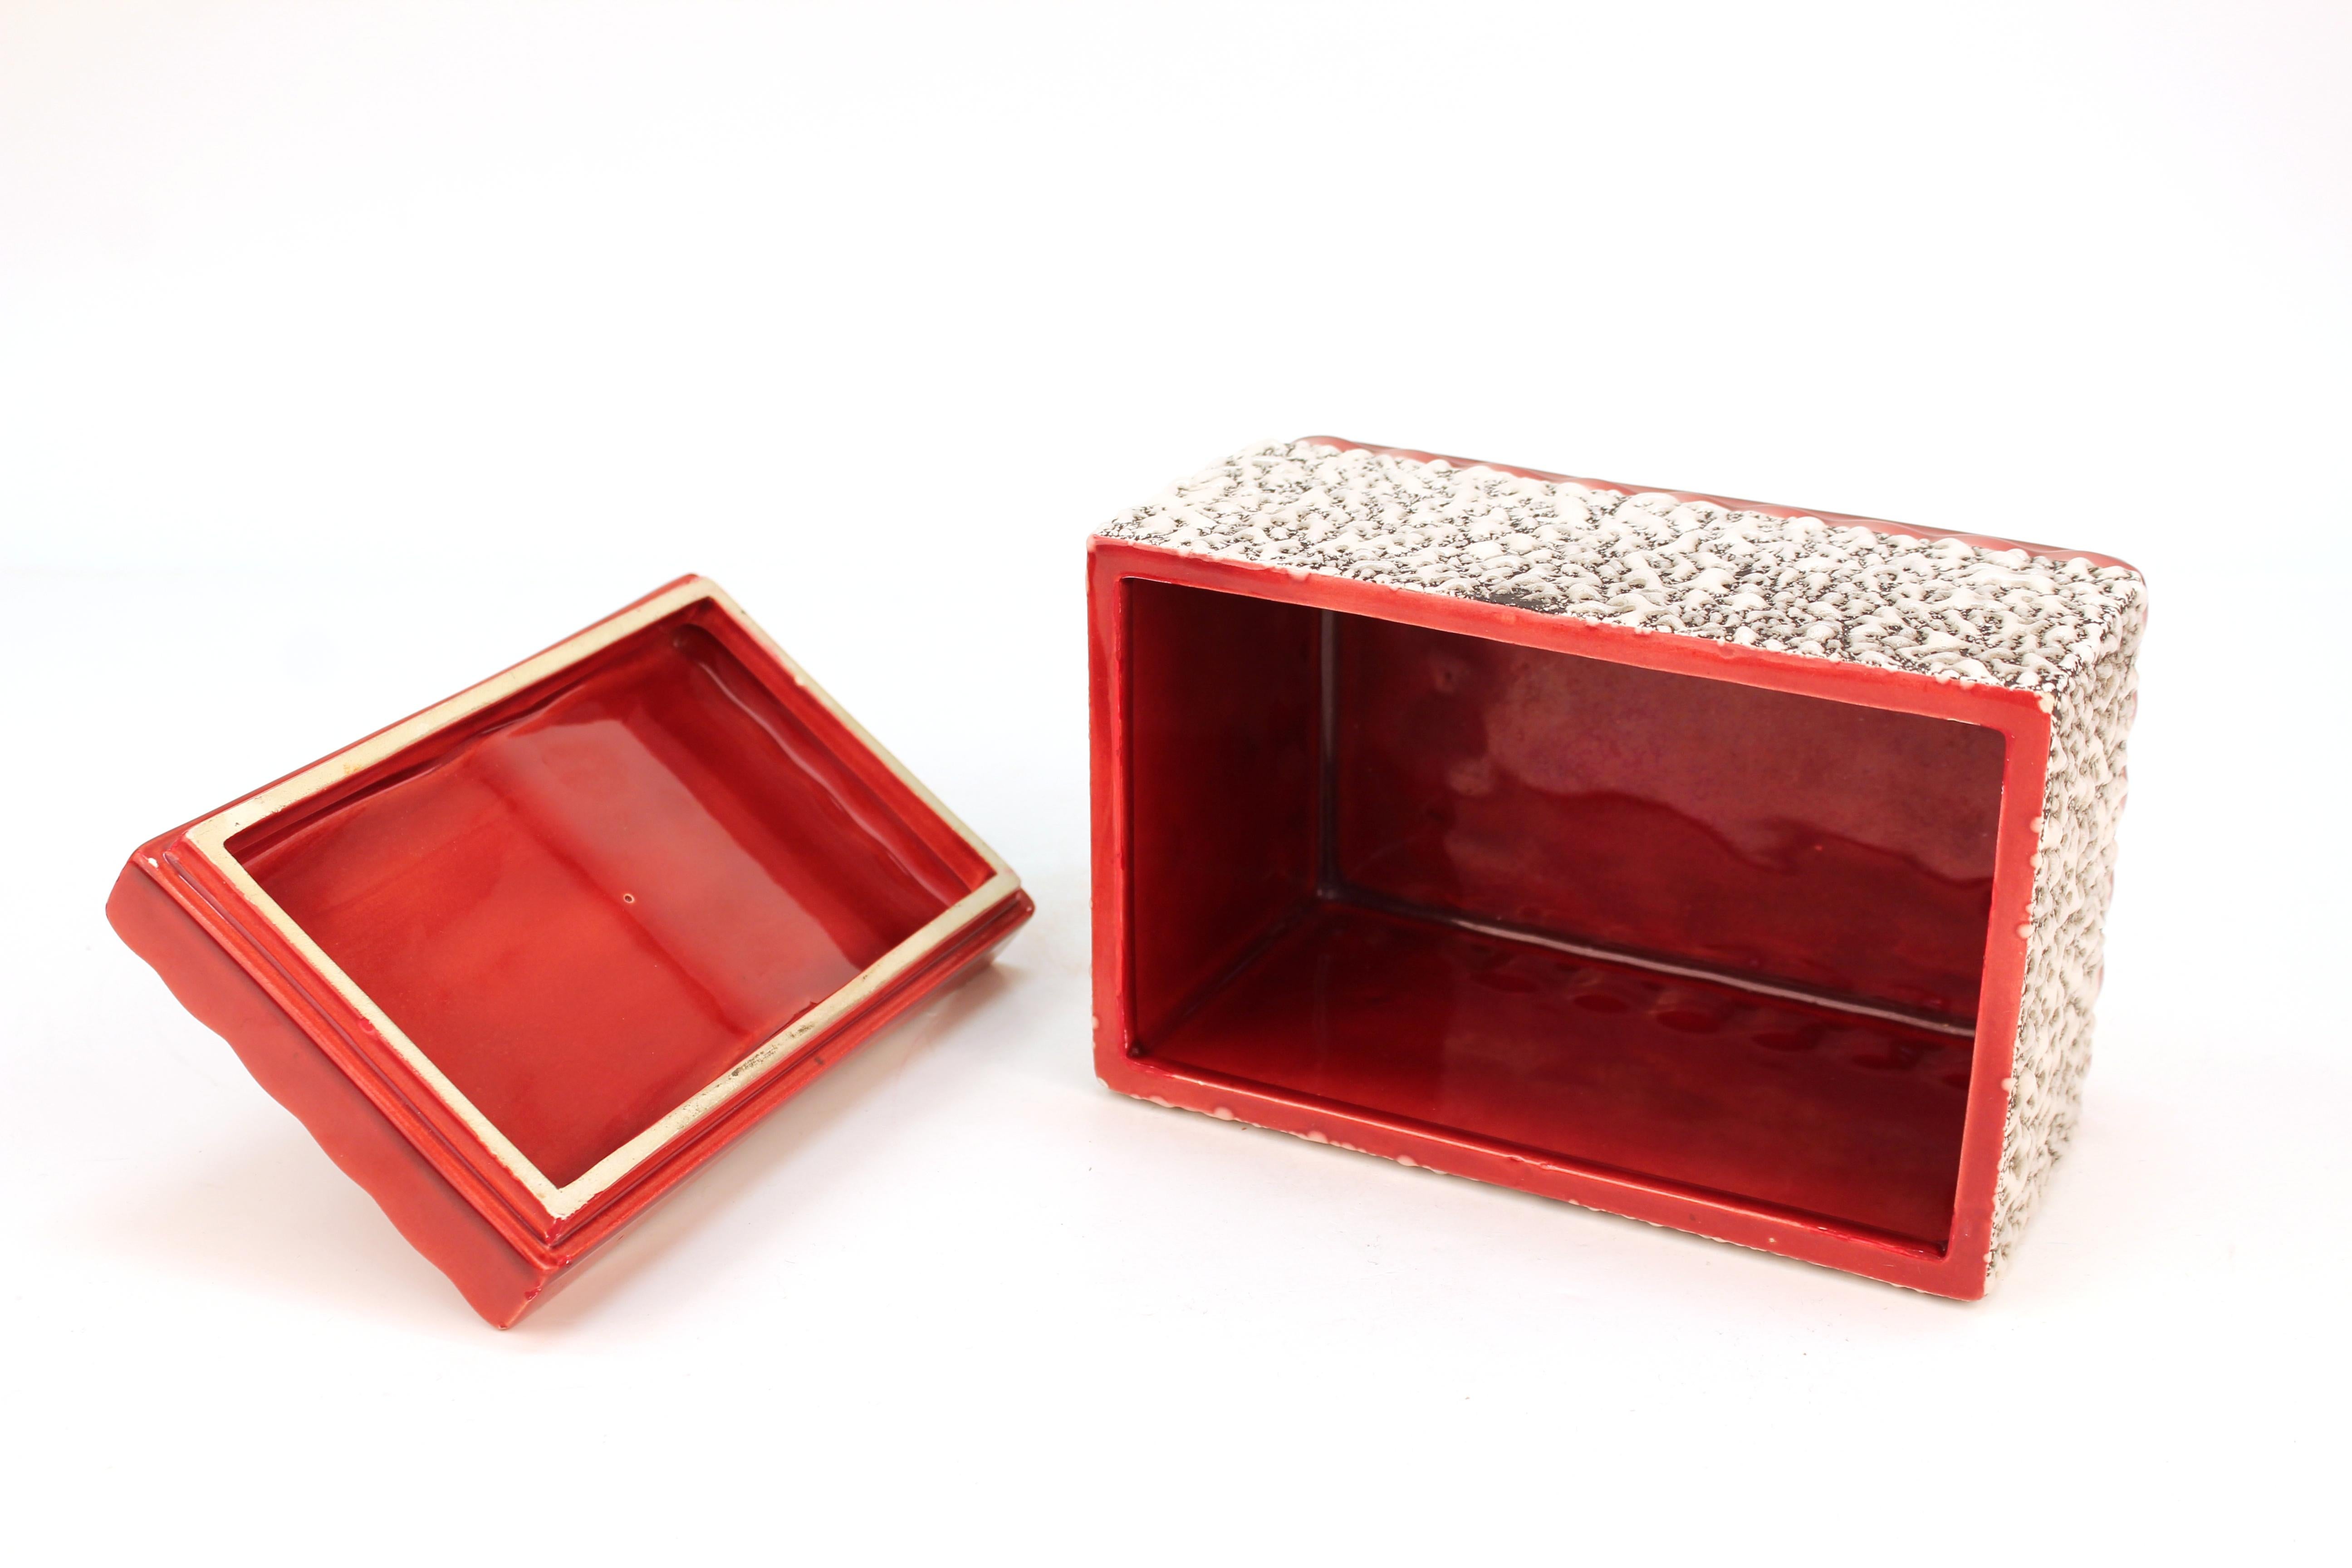 Paul Milet Art Deco Sèvres Ceramic Box with Lid 1